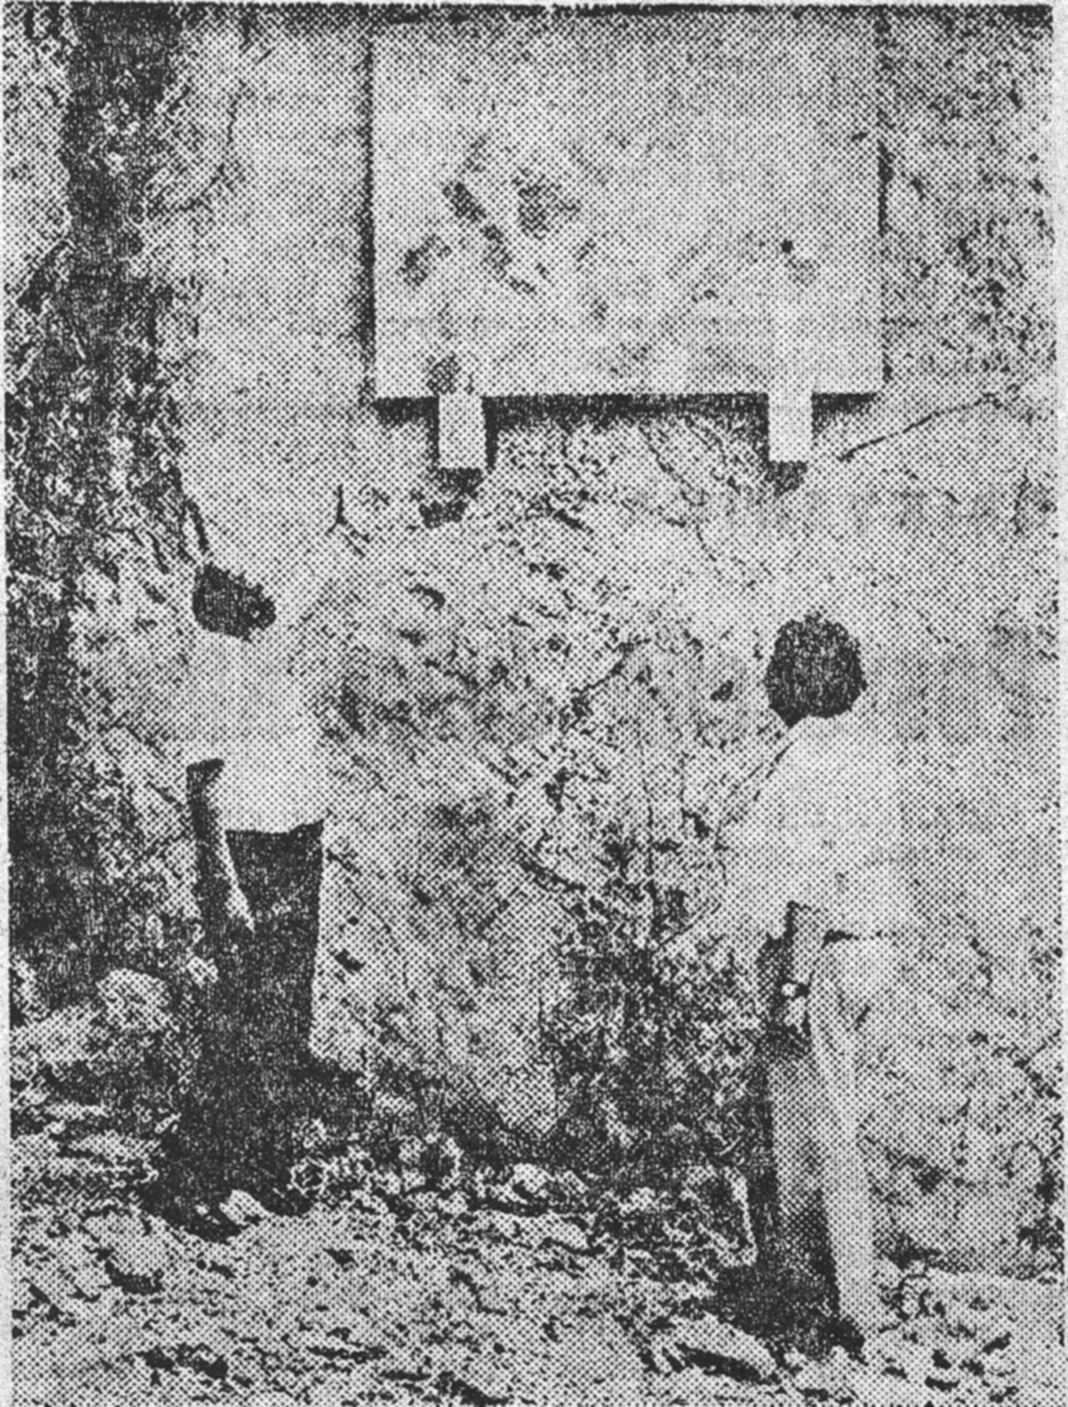 Спомен плоча у ували Слана постављена 1975 - уклоњена за протеклог рата